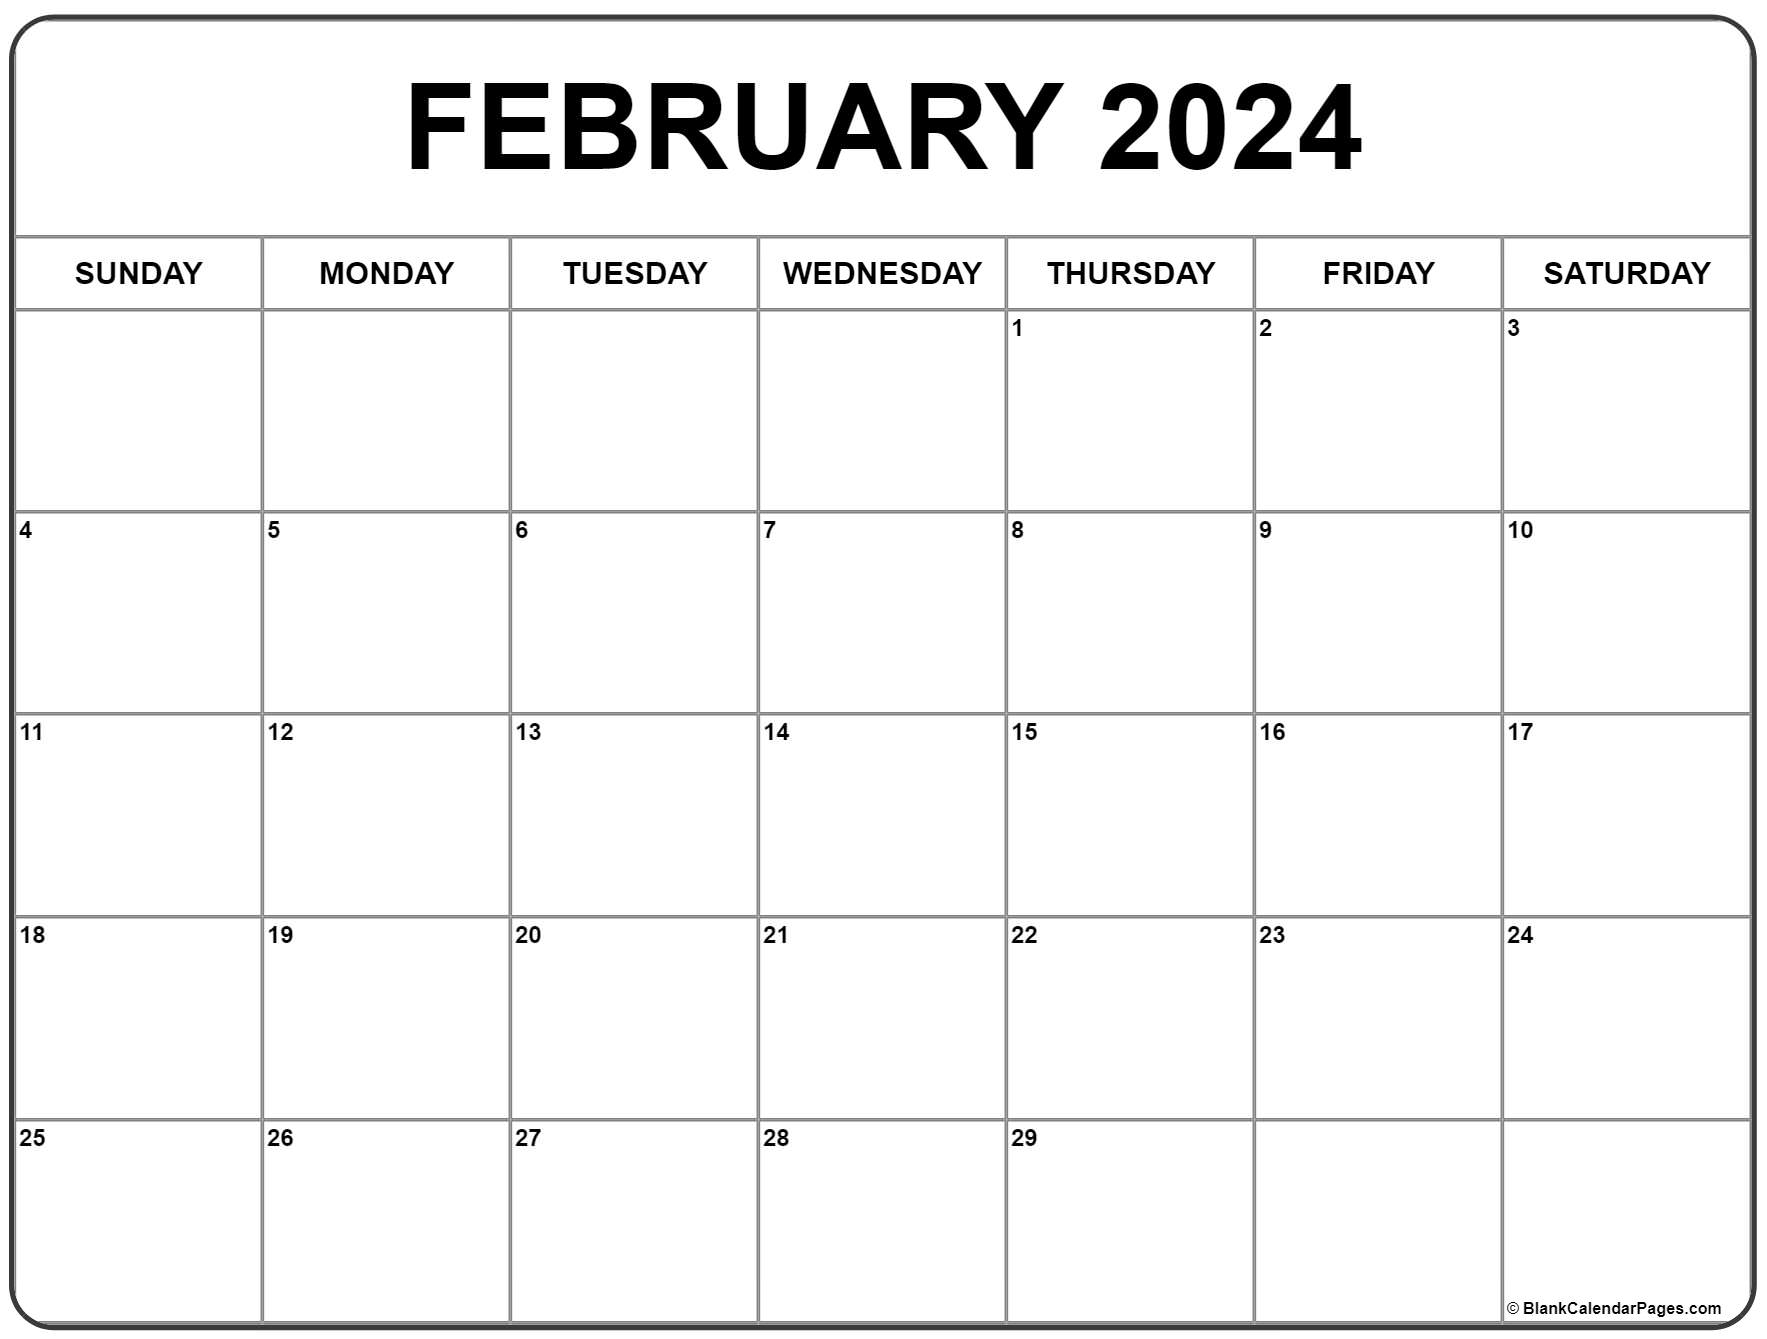 February 2024 Calendar | Free Printable Calendar for Free Printable 2024 Calendar February